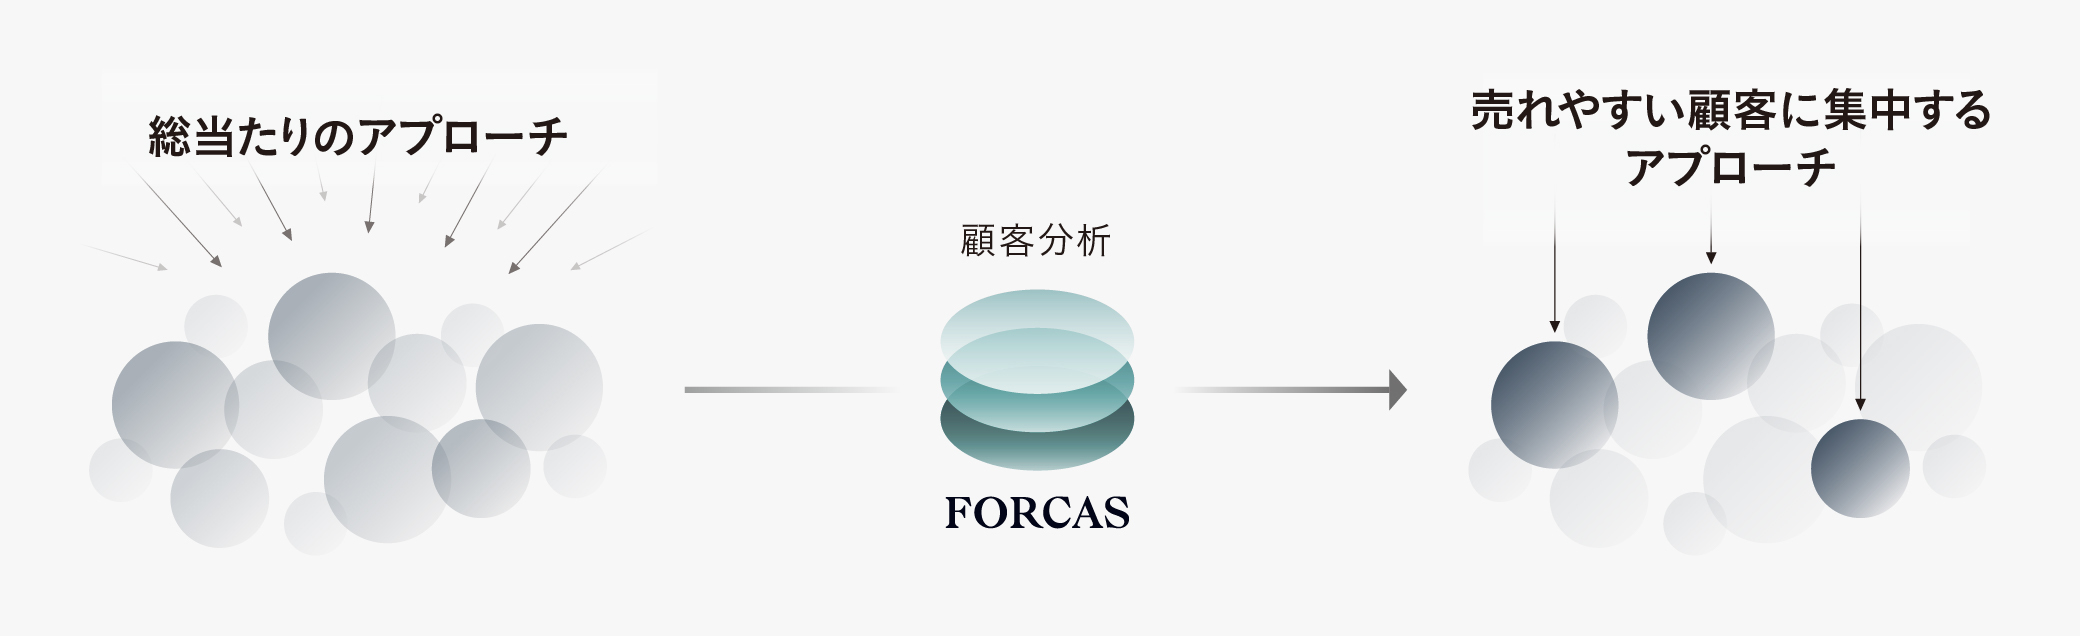 FORCAS導入後のアプローチの変化